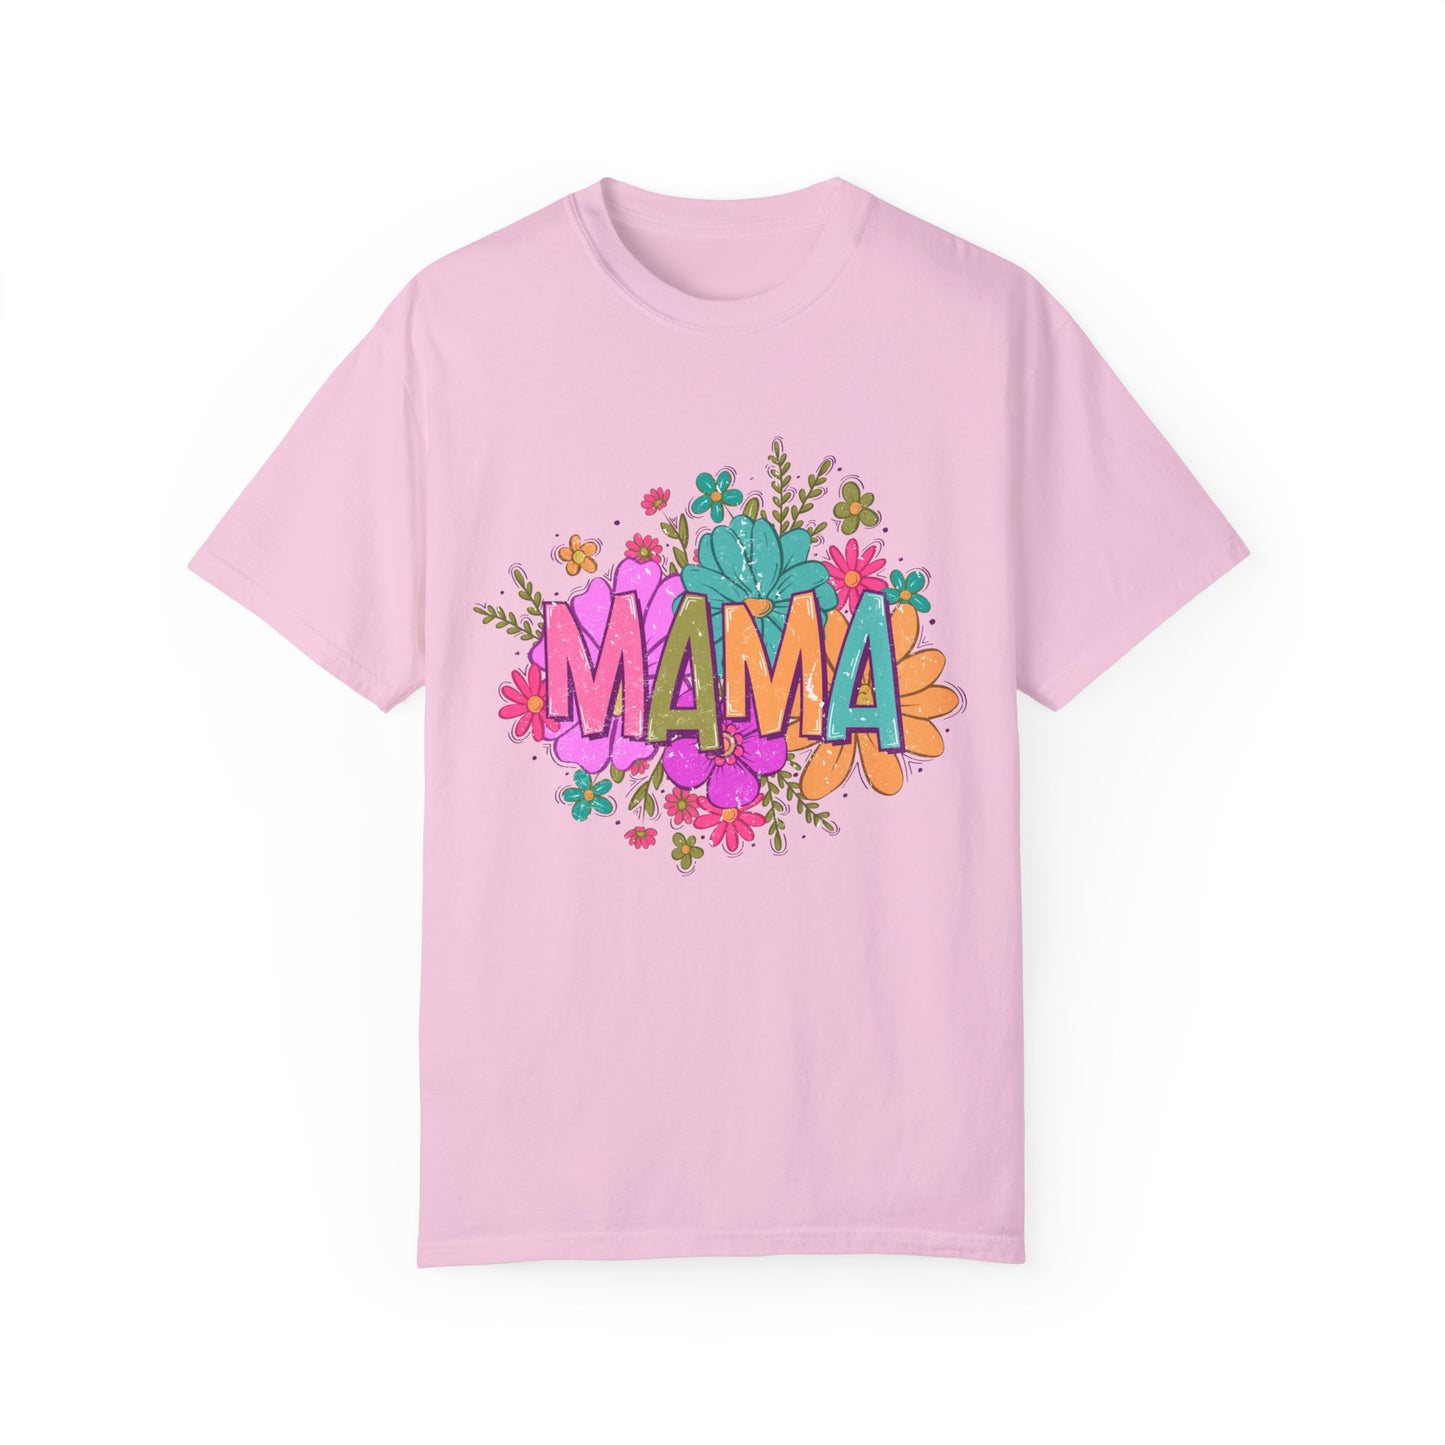 Mama Floral Shirt